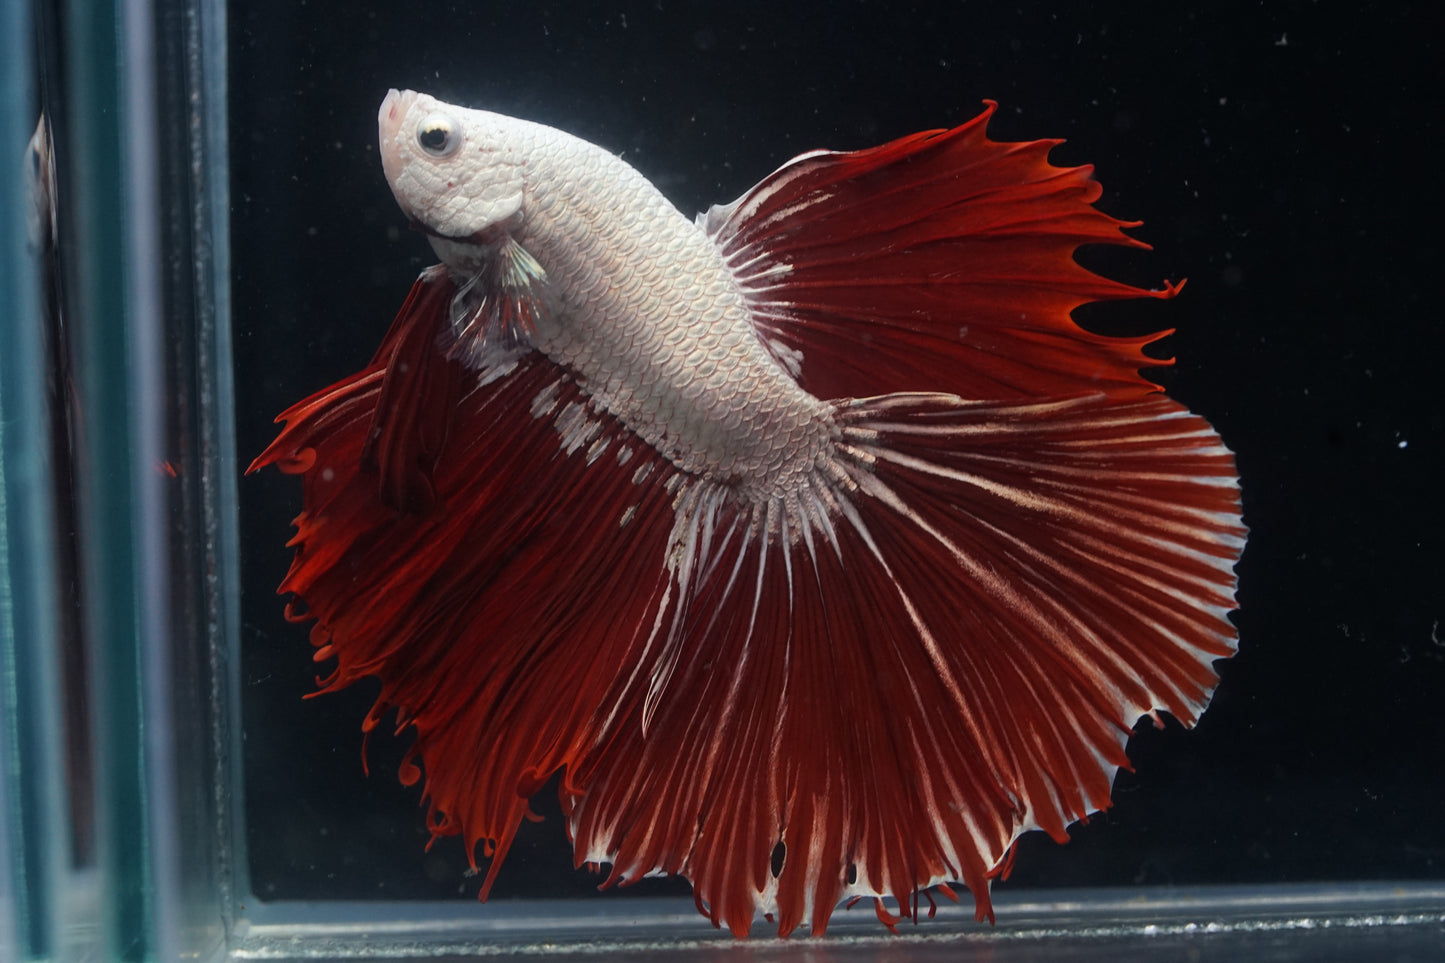 White Dragon Scale Red Over Halfmoon Big Fan Tail - Premium Grade Betta Fish - Live Aquarium Fish